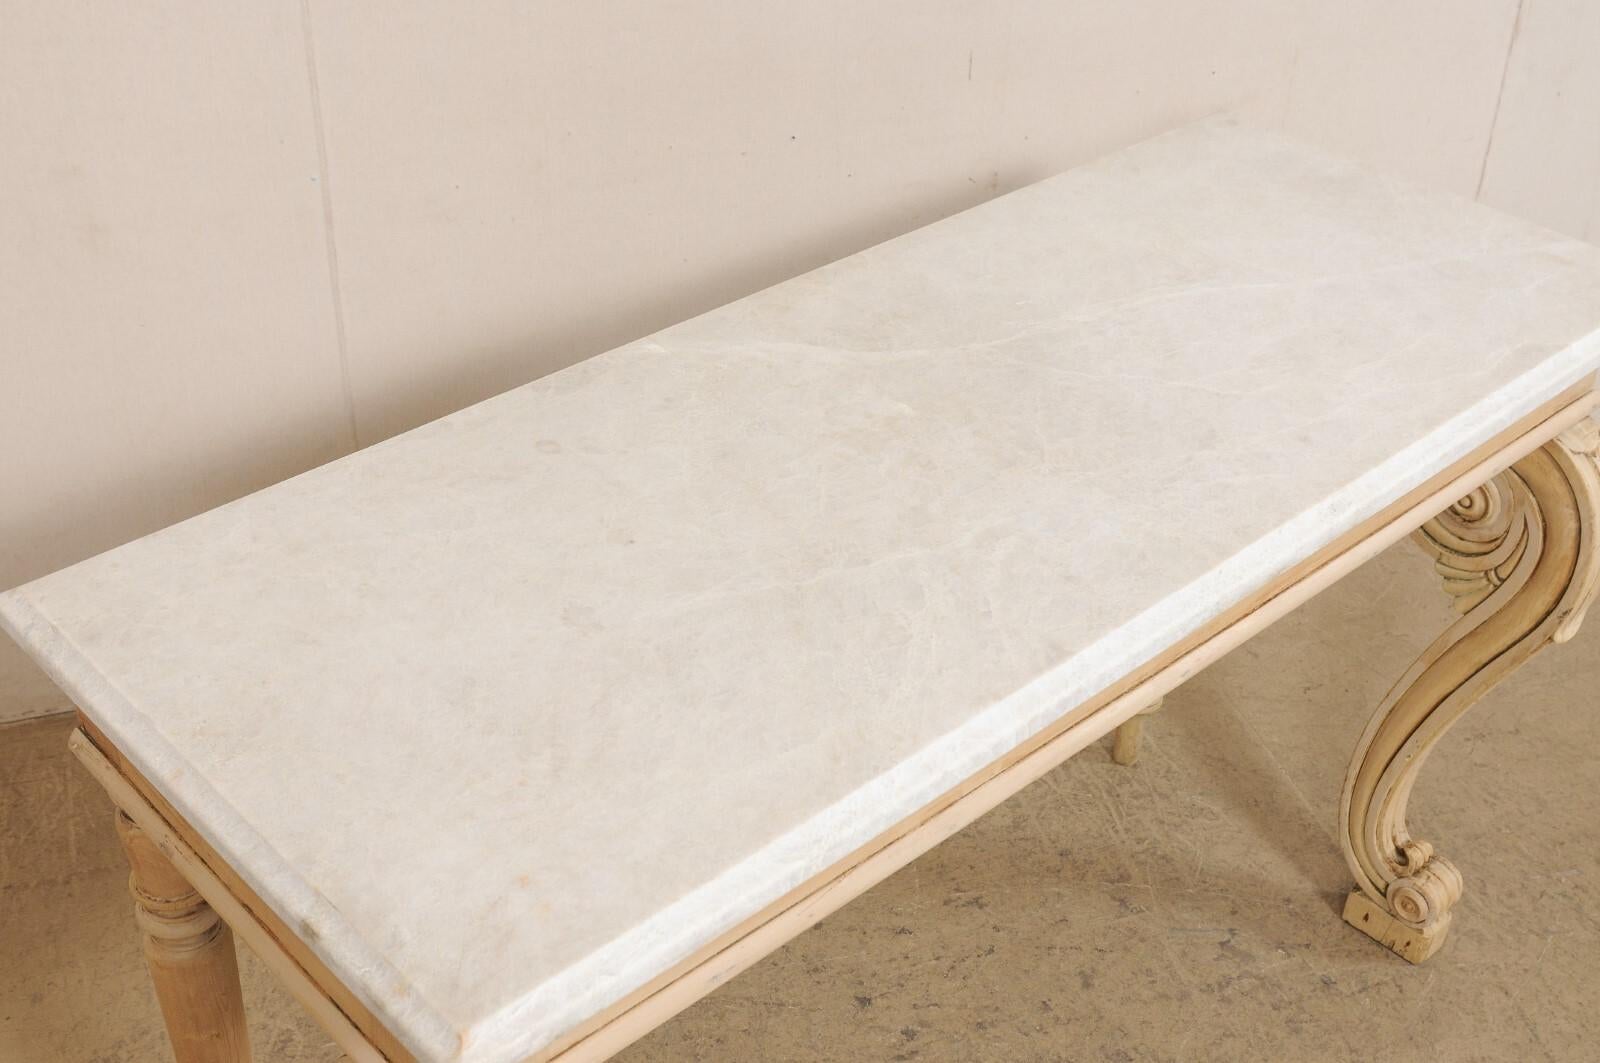 Console en bois sculpté et blanchi de style Régence anglaise, avec plateau en marbre neuf, du début du XIXe siècle. Cette table ancienne d'Angleterre est dotée d'un plateau de marbre rectangulaire neuf/personnalisé à bord biseauté, qui repose sur un